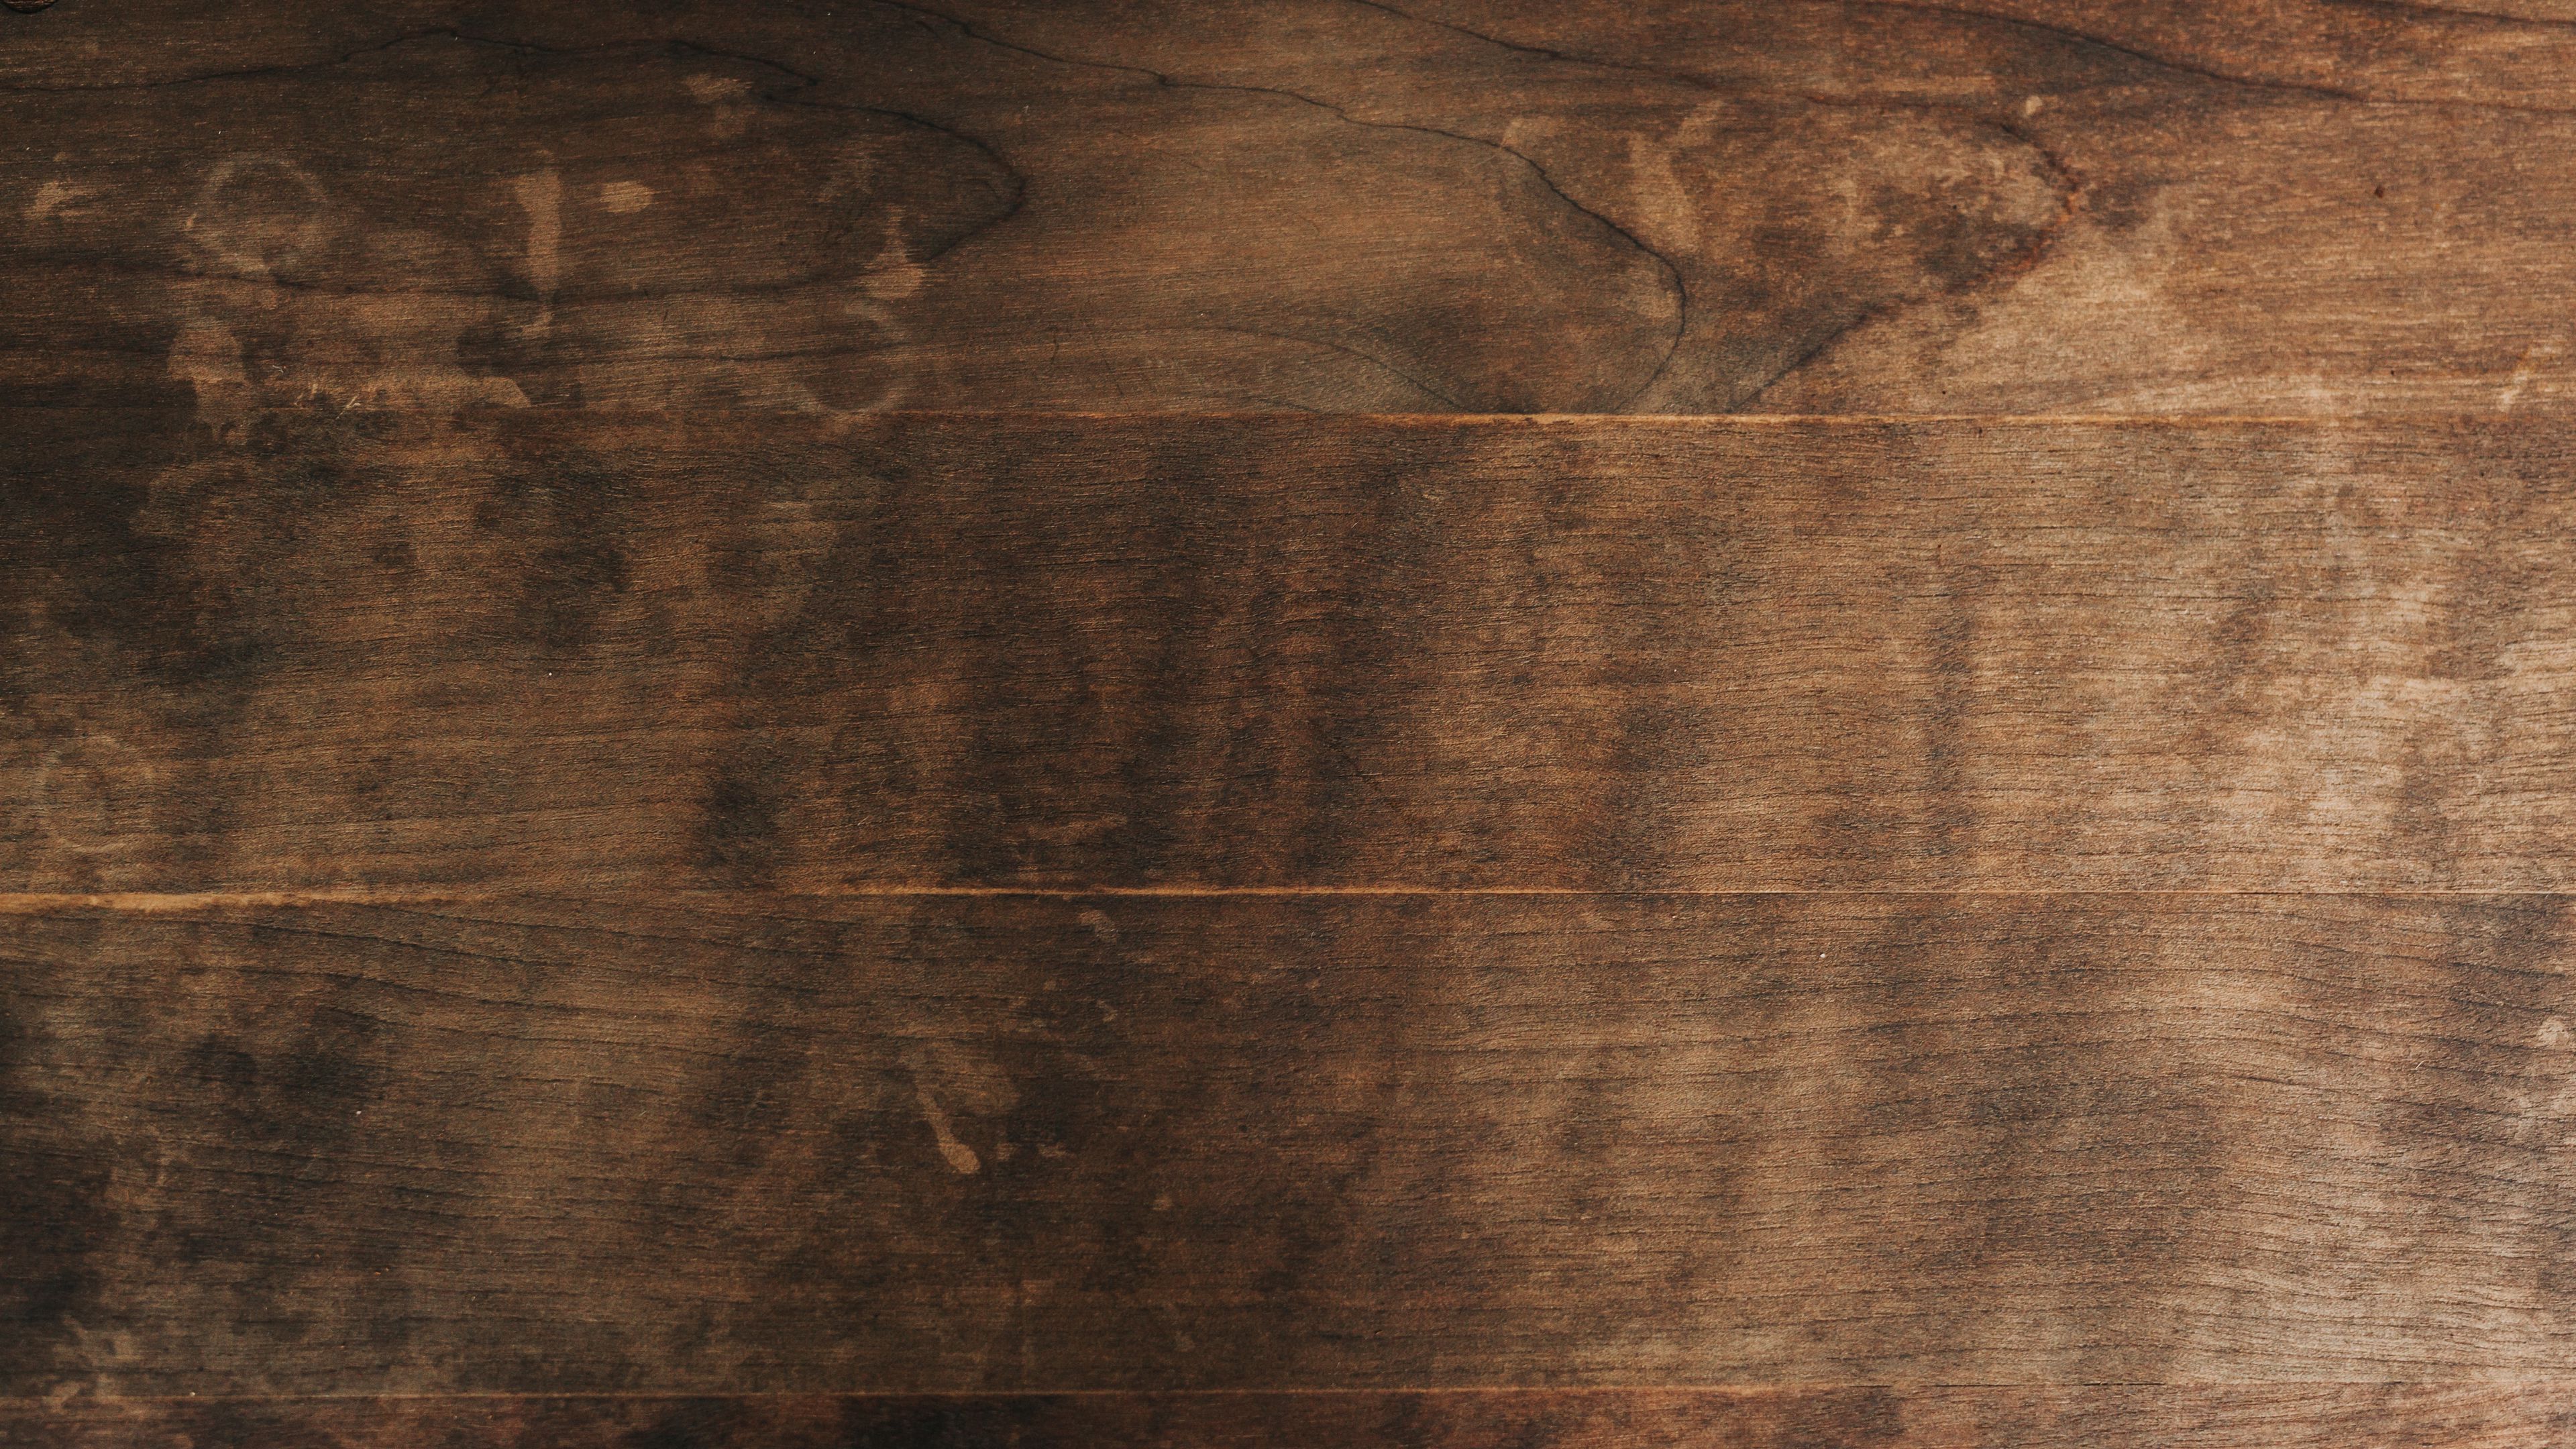 Nền gỗ 4K: Khám phá vẻ đẹp toát lên từ chiếc nền gỗ 4K tinh tế với độ phân giải tối ưu. Tông màu tự nhiên, vân gỗ tuyệt đẹp sẽ mang đến cho bạn một không gian sống đầy ấn tượng và chất lượng. Đón xem hình ảnh liên quan đến từ khóa này để thưởng thức trọn vẹn tuyệt phẩm nền gỗ 4K.